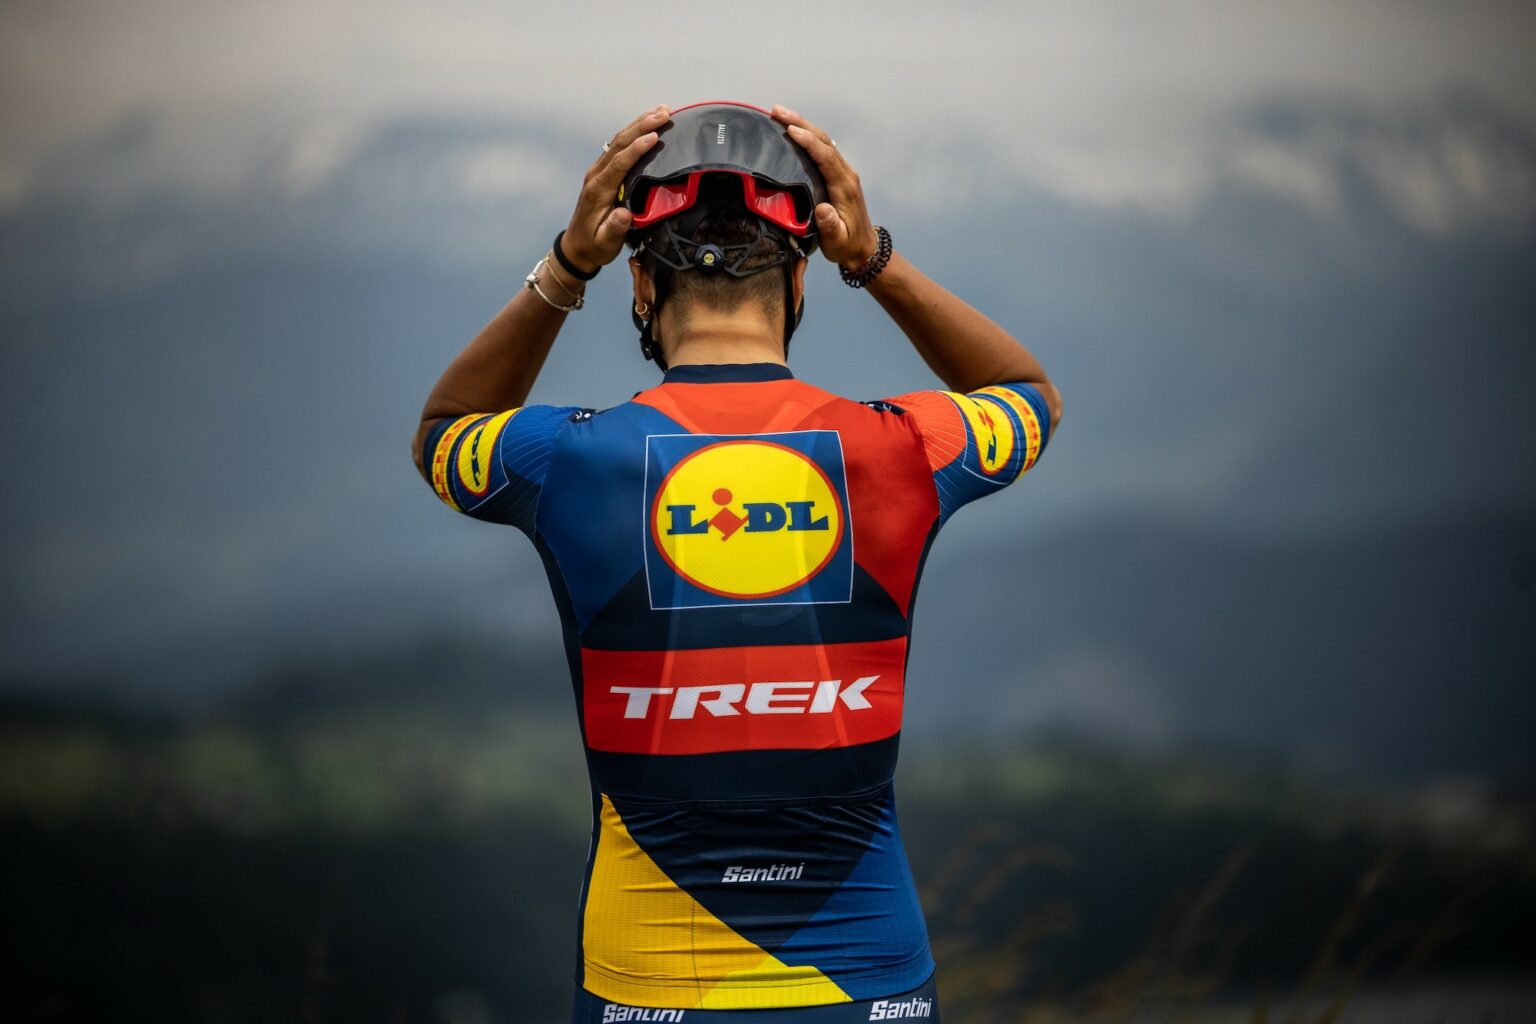 L'équipe LidlTrek dévoile son (joli) maillot pour le Tour de France 2023